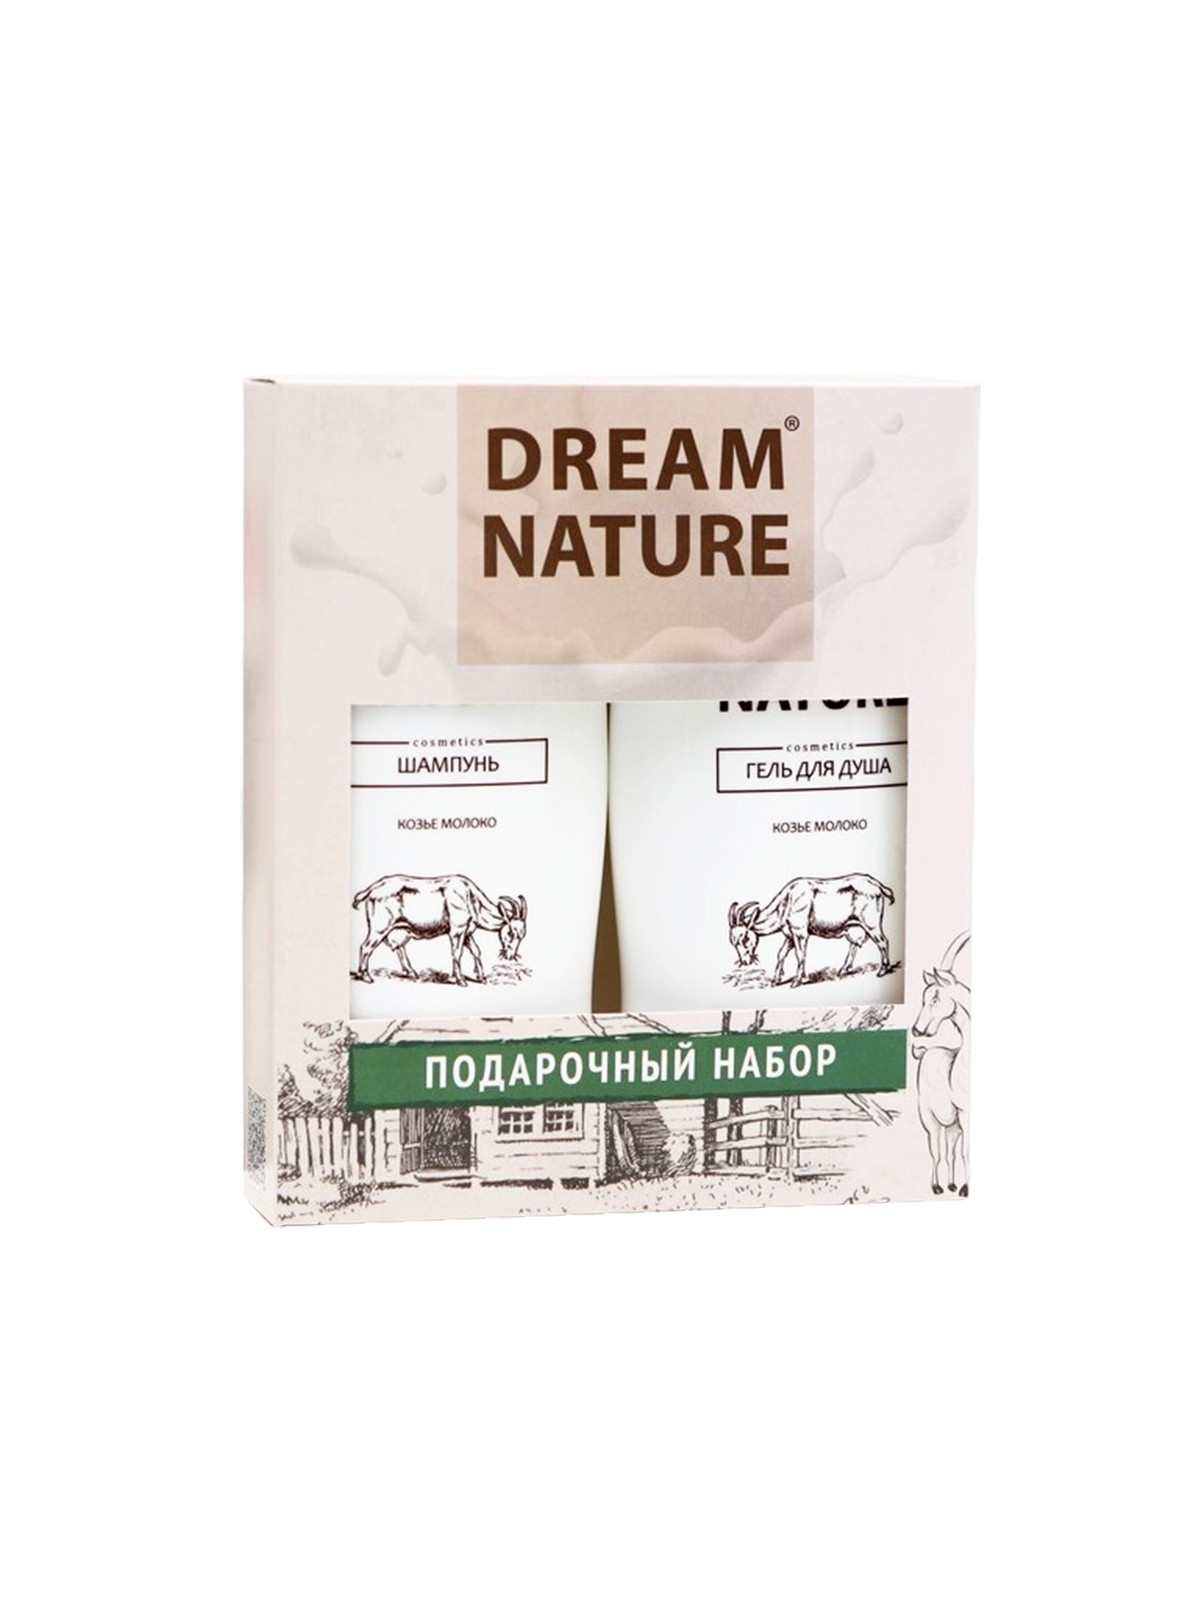 Dream Nature подарочный набор для женщин (шампунь и гель для душа с козьим молоком) 2* 250 мл